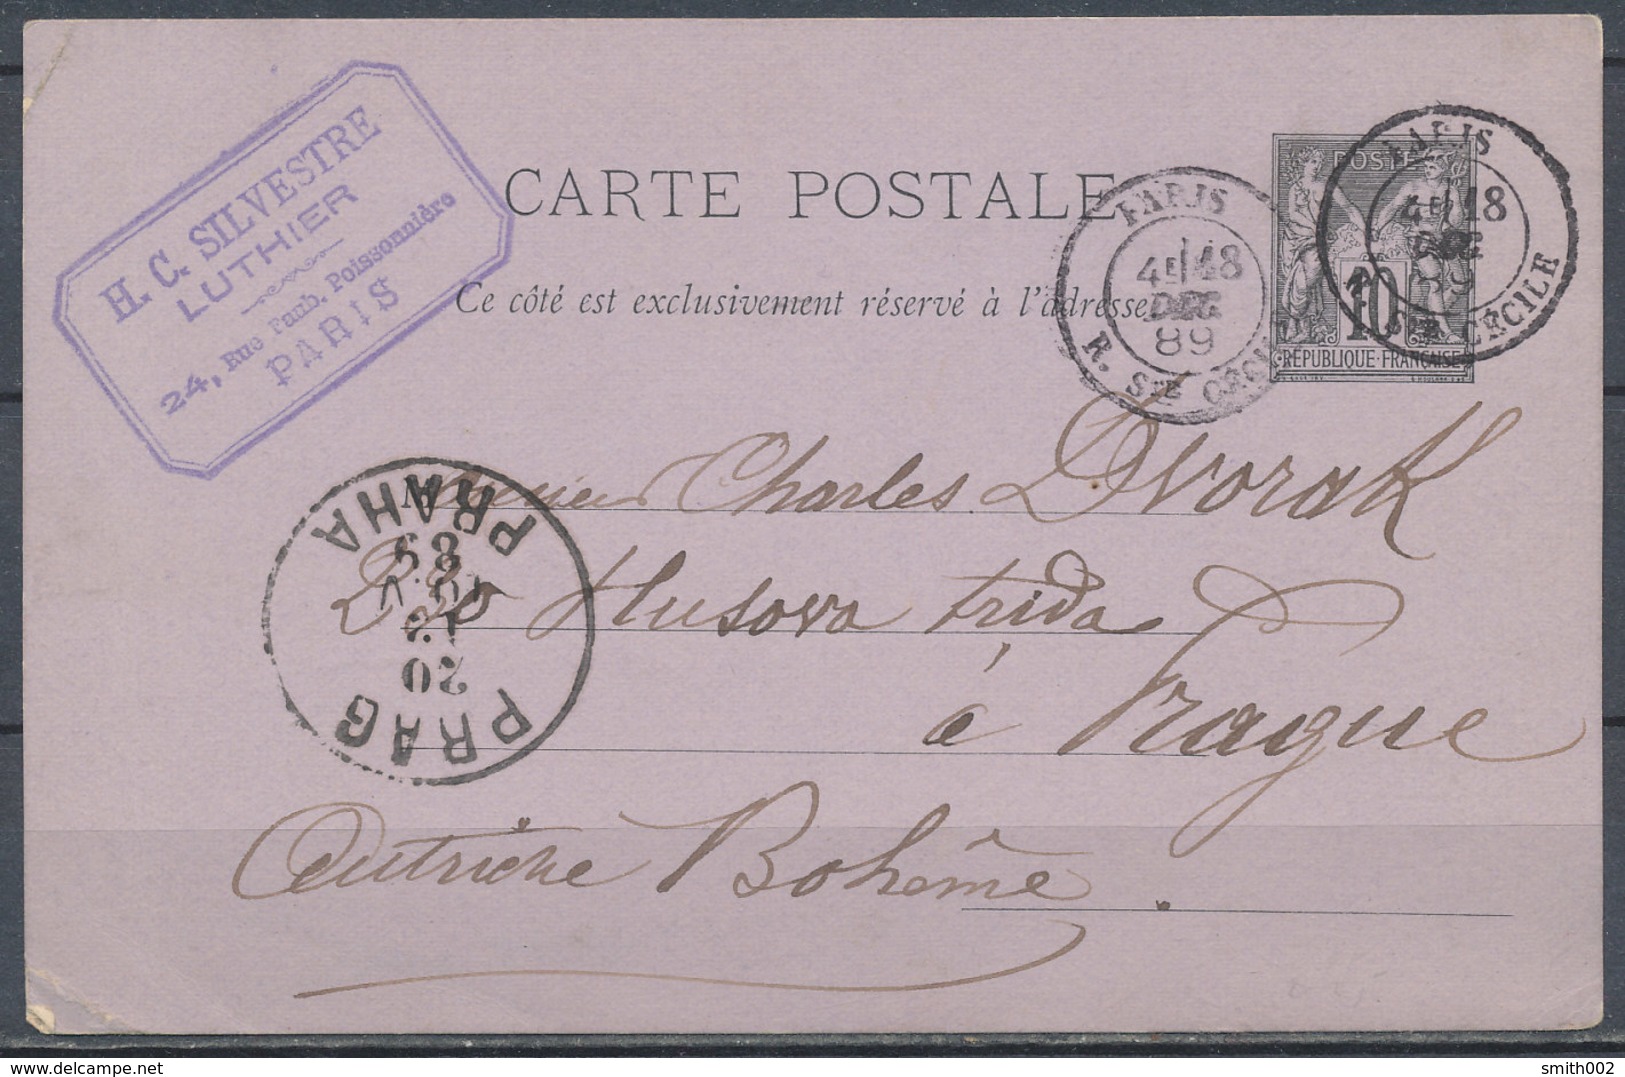 FRANCE - 1889 Carte Postale To Bohemie - Documents De La Poste